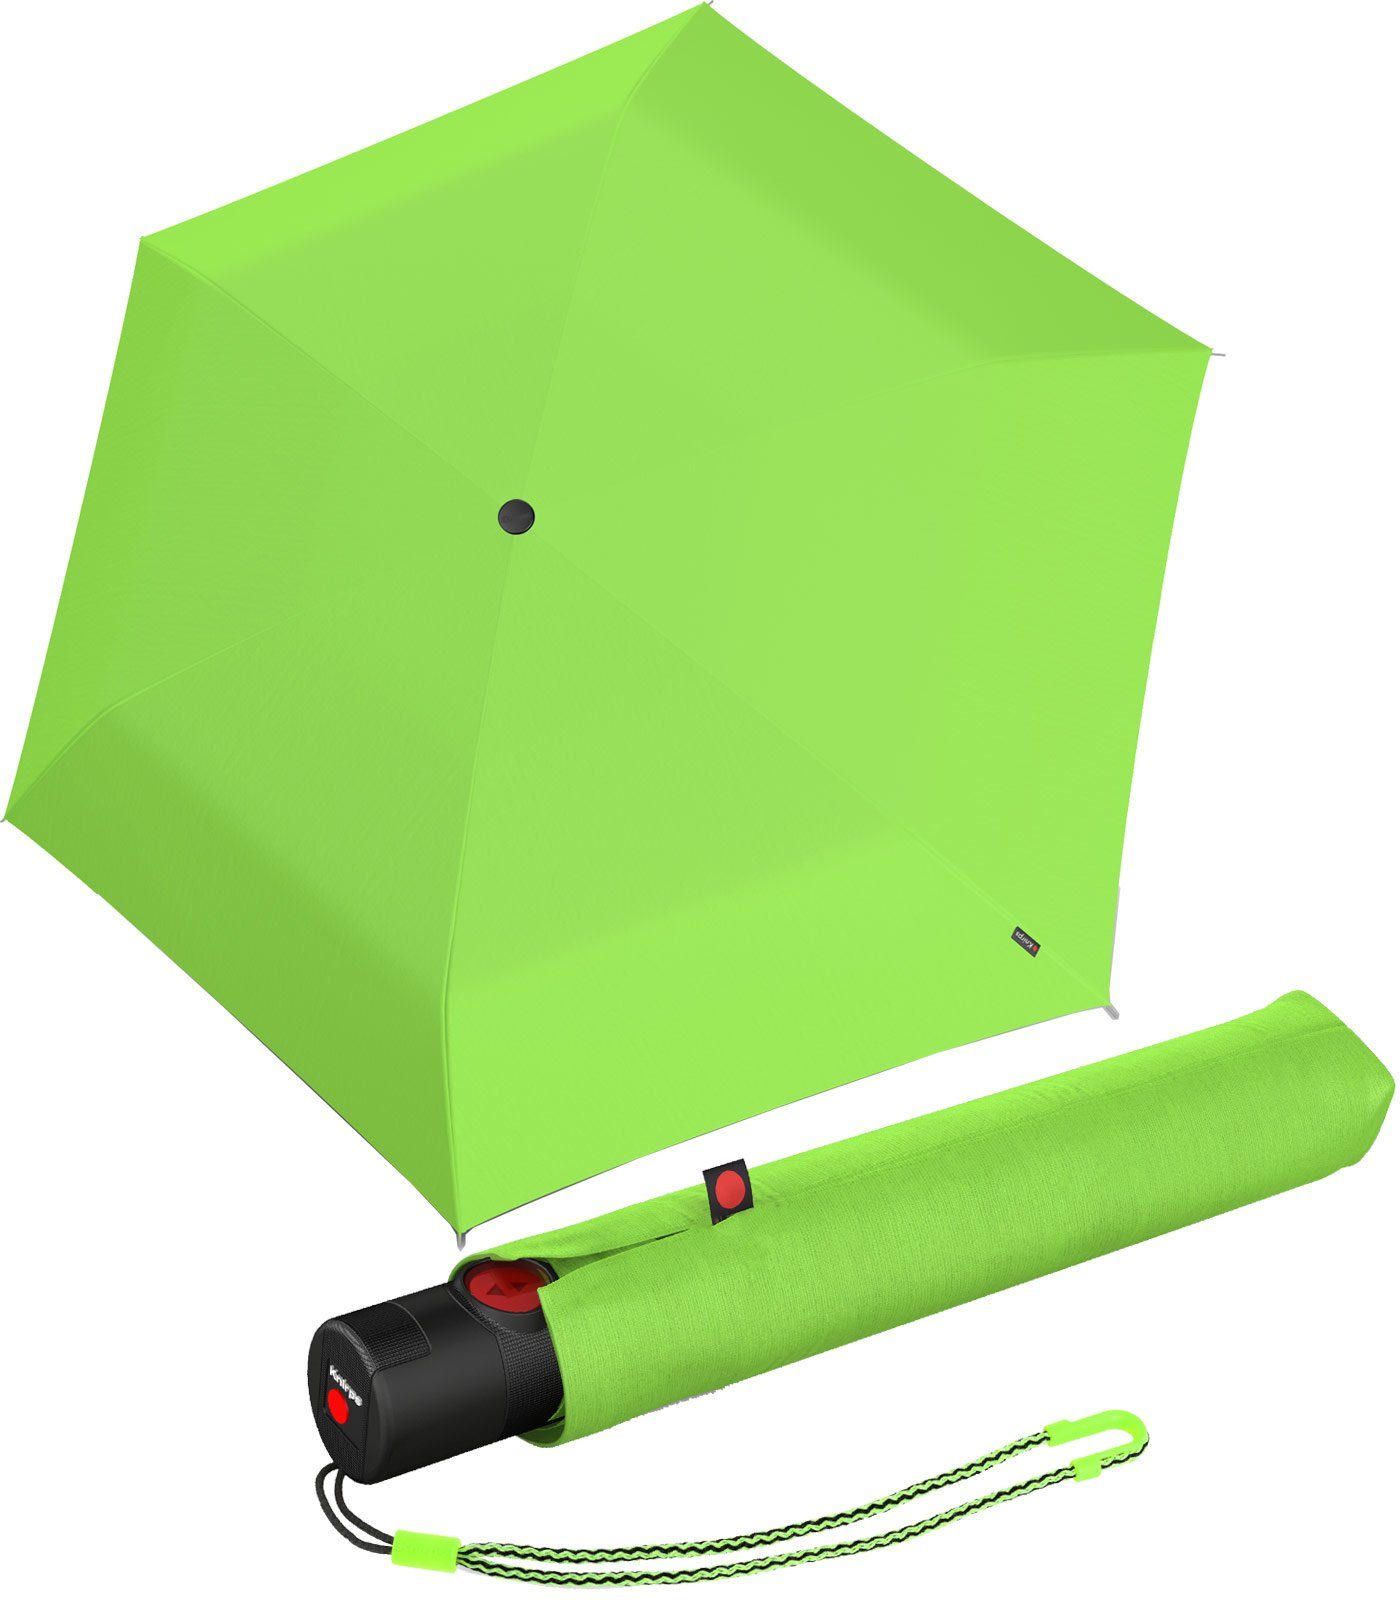 Knirps mit mit leichter Taschenregenschirm schlanker, Schirm leichteste der Knirps® Auf-Zu-Automatik, Duomatic-Funktion grün